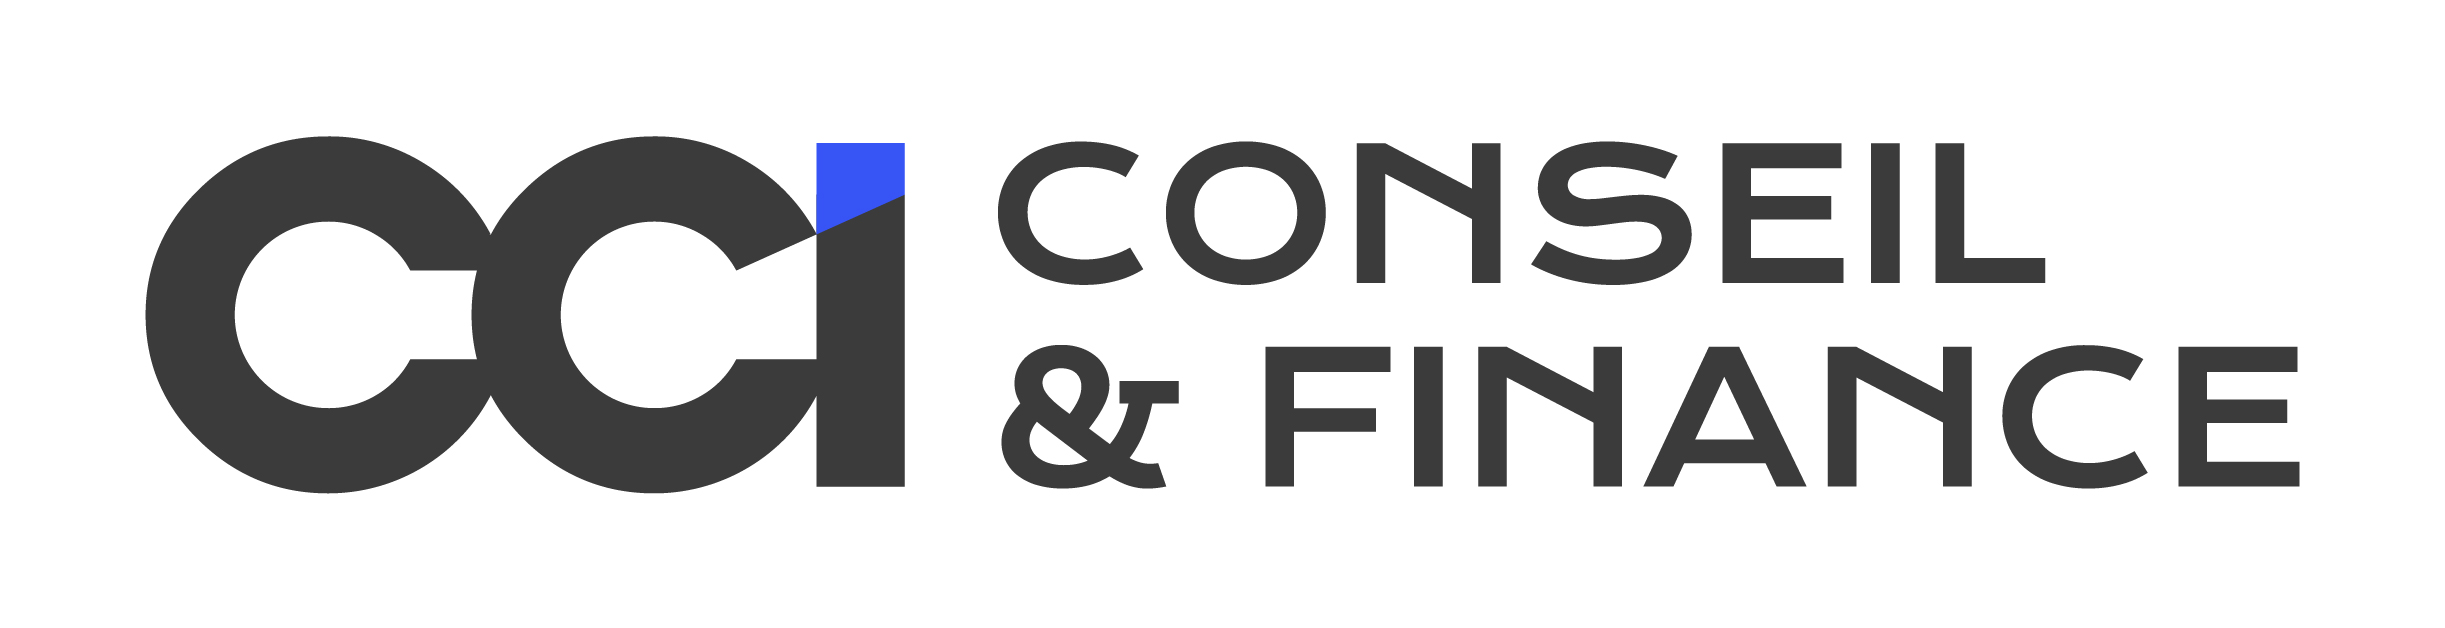 logo cci conseil et finance